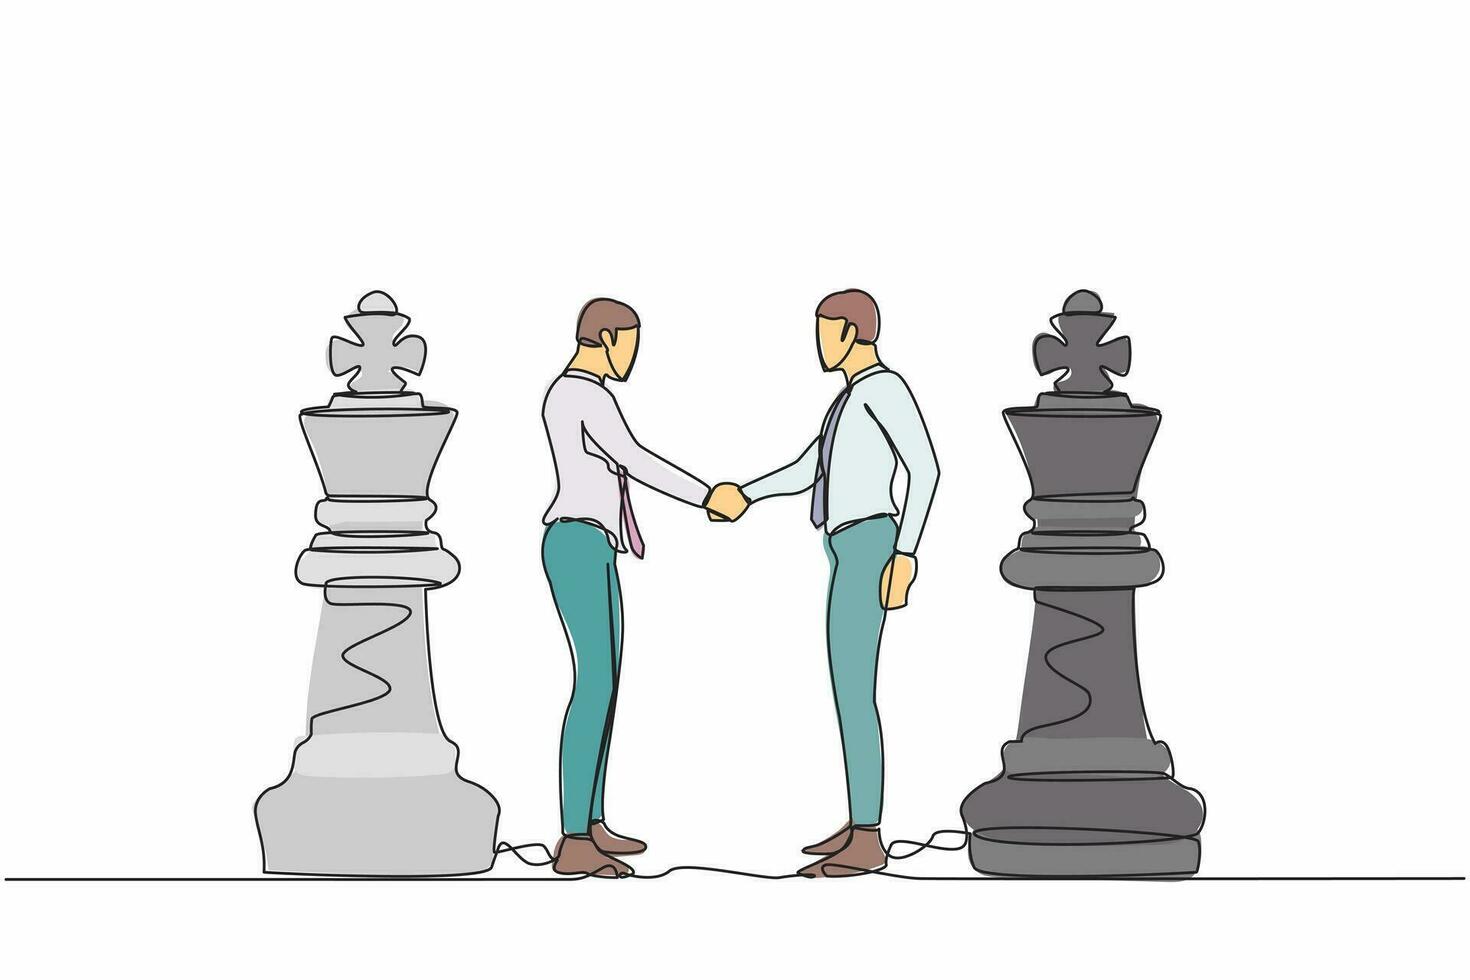 enda kontinuerlig linje teckning två affärsmän skakning händer tillsammans medan stående mellan av kung schack bitar. entreprenör ledare liknelse av avtal. ett linje dra design vektor illustration